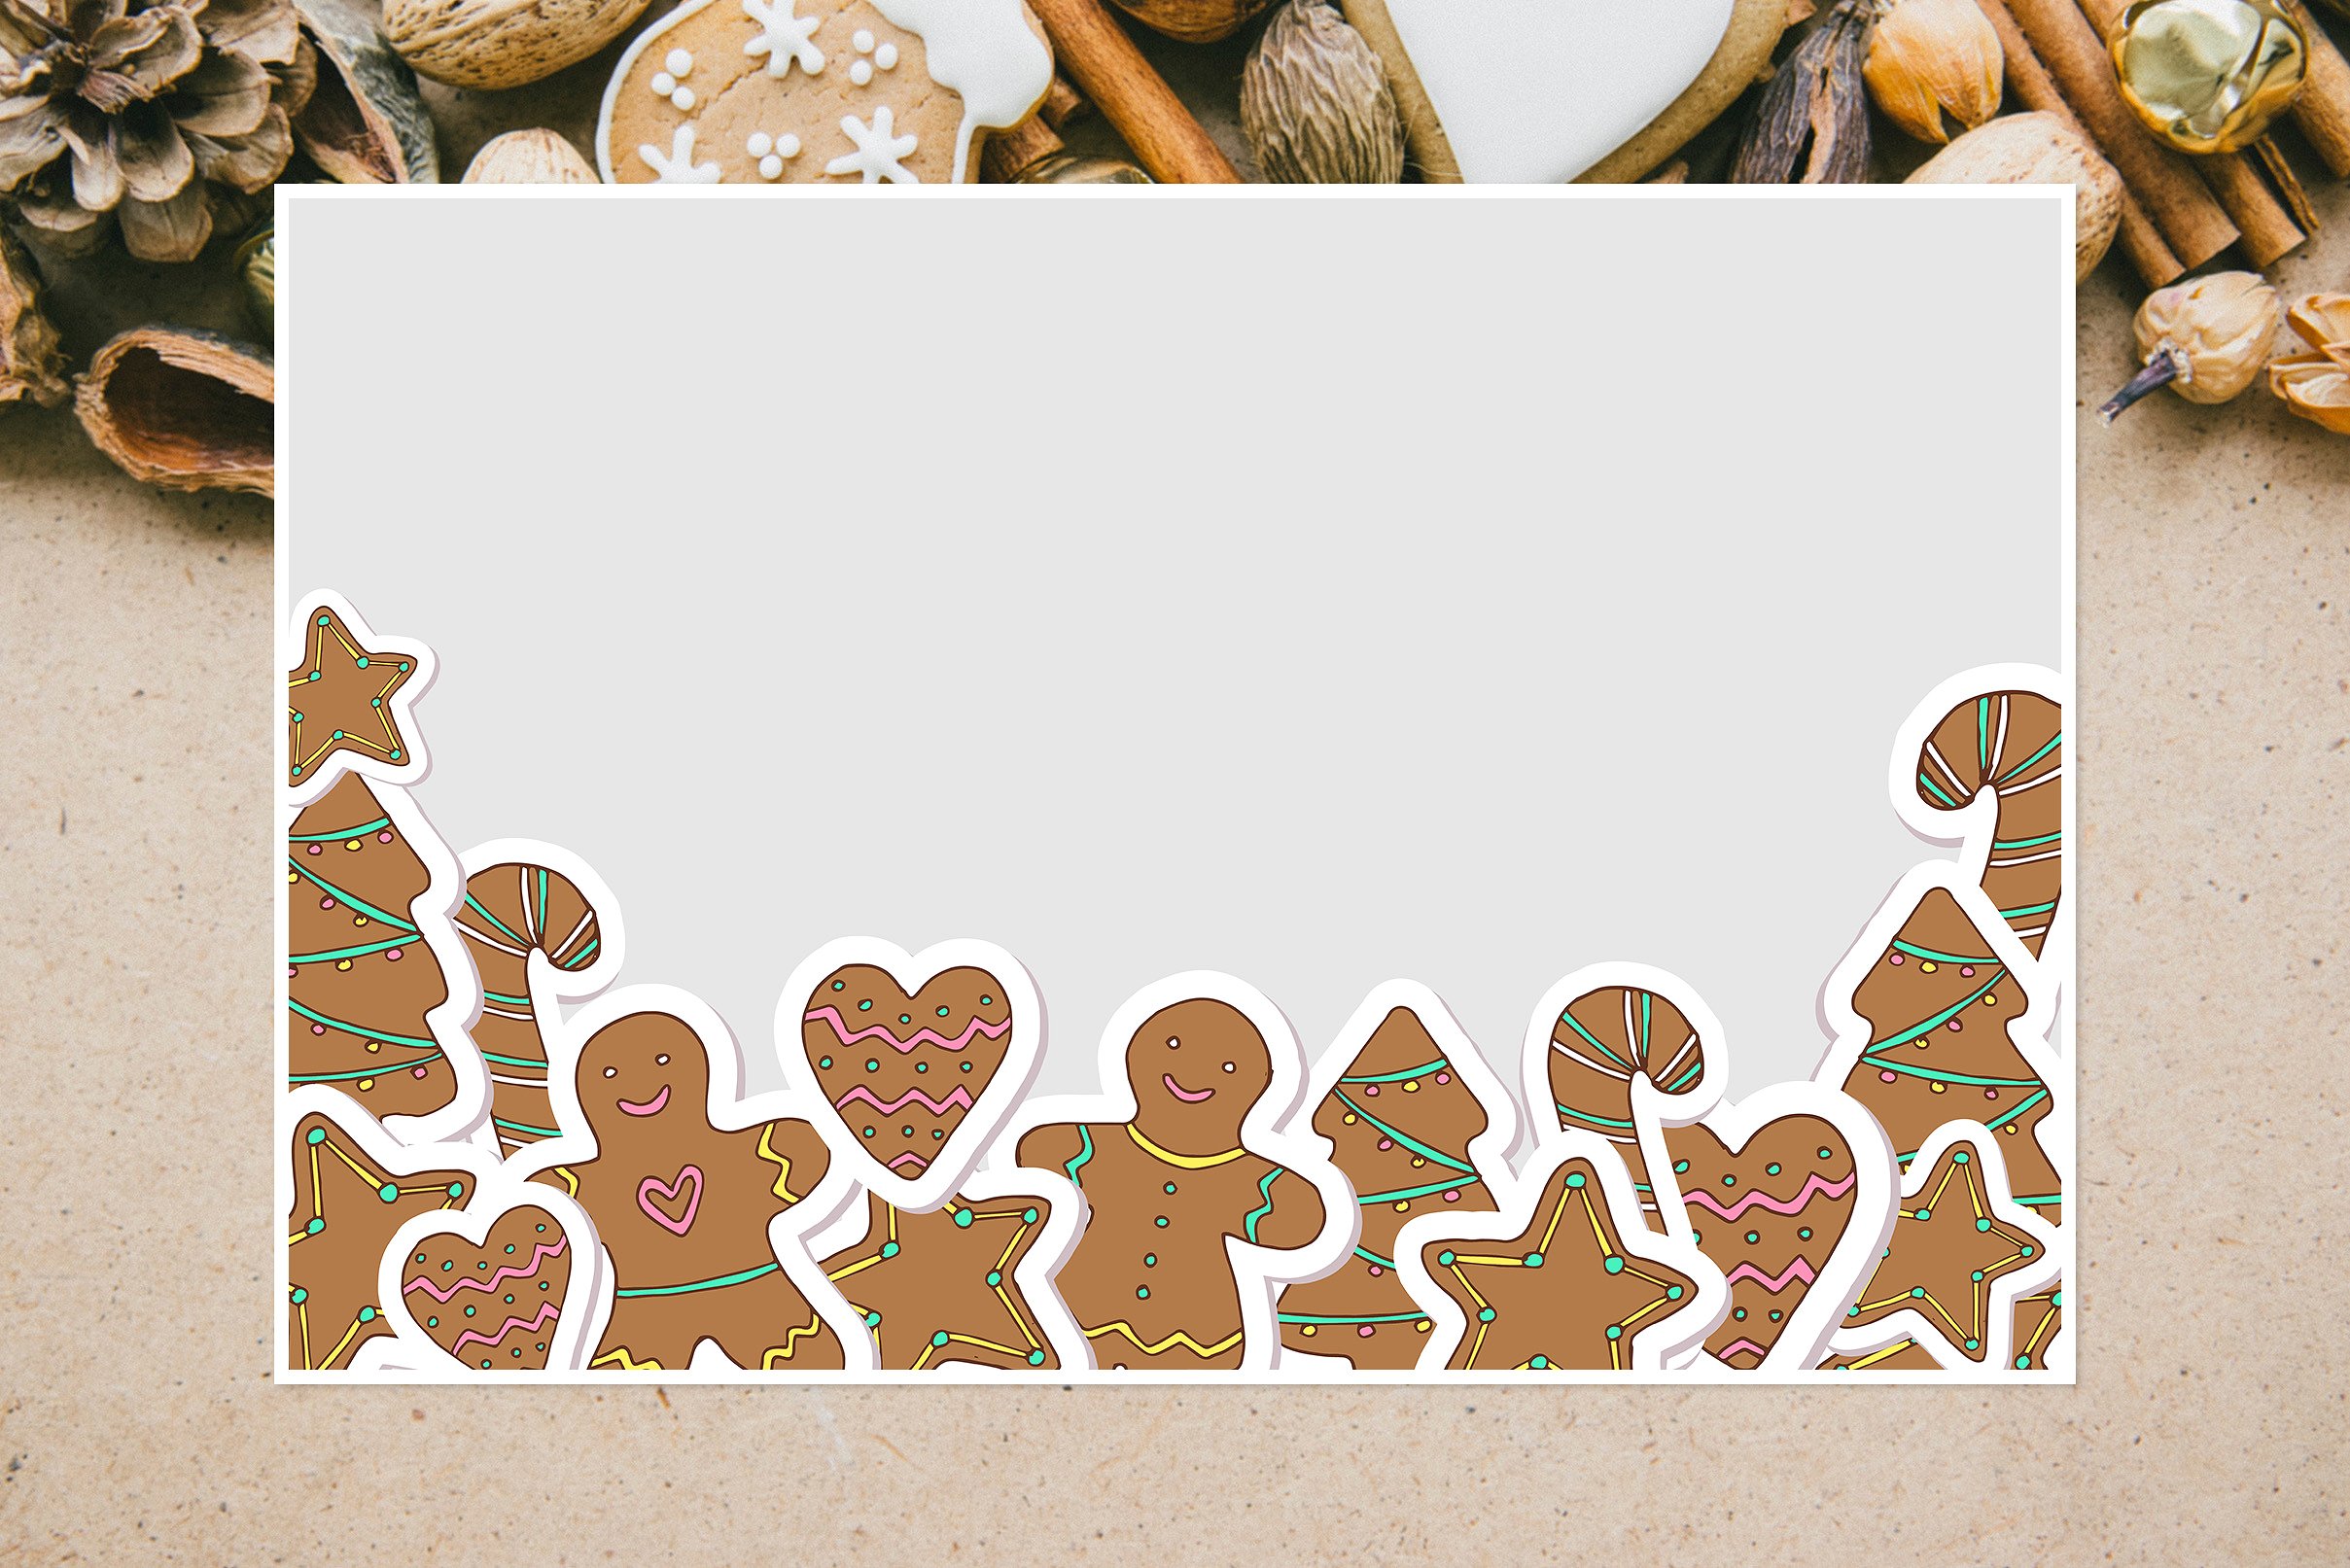 可爱的圣诞节手绘饼干矢量素材下载[ai,eps]插图(3)